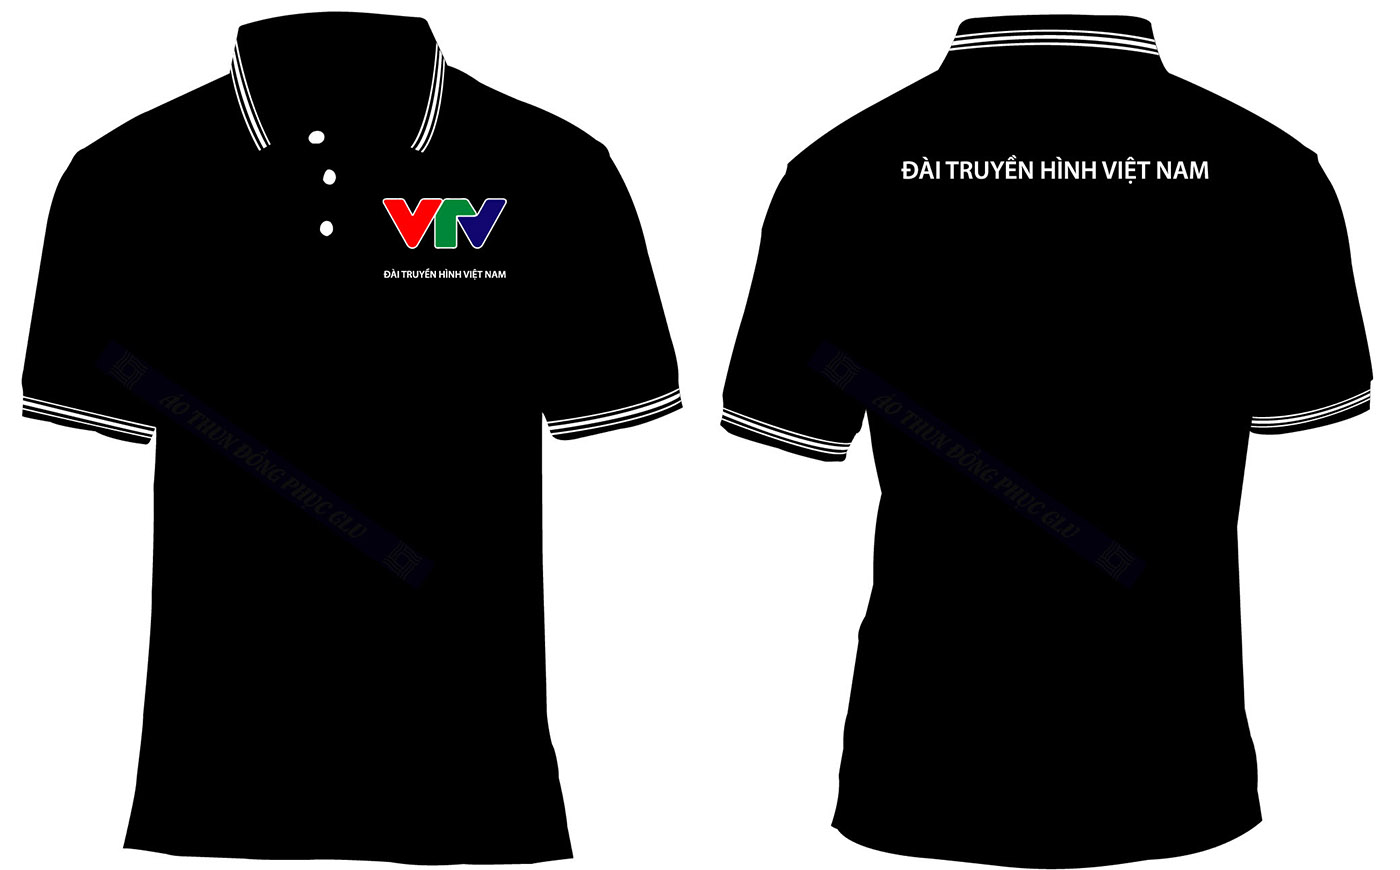 AO THUN DAI TRUYEN HINH VTV thiết kế áo đồng phục công ty